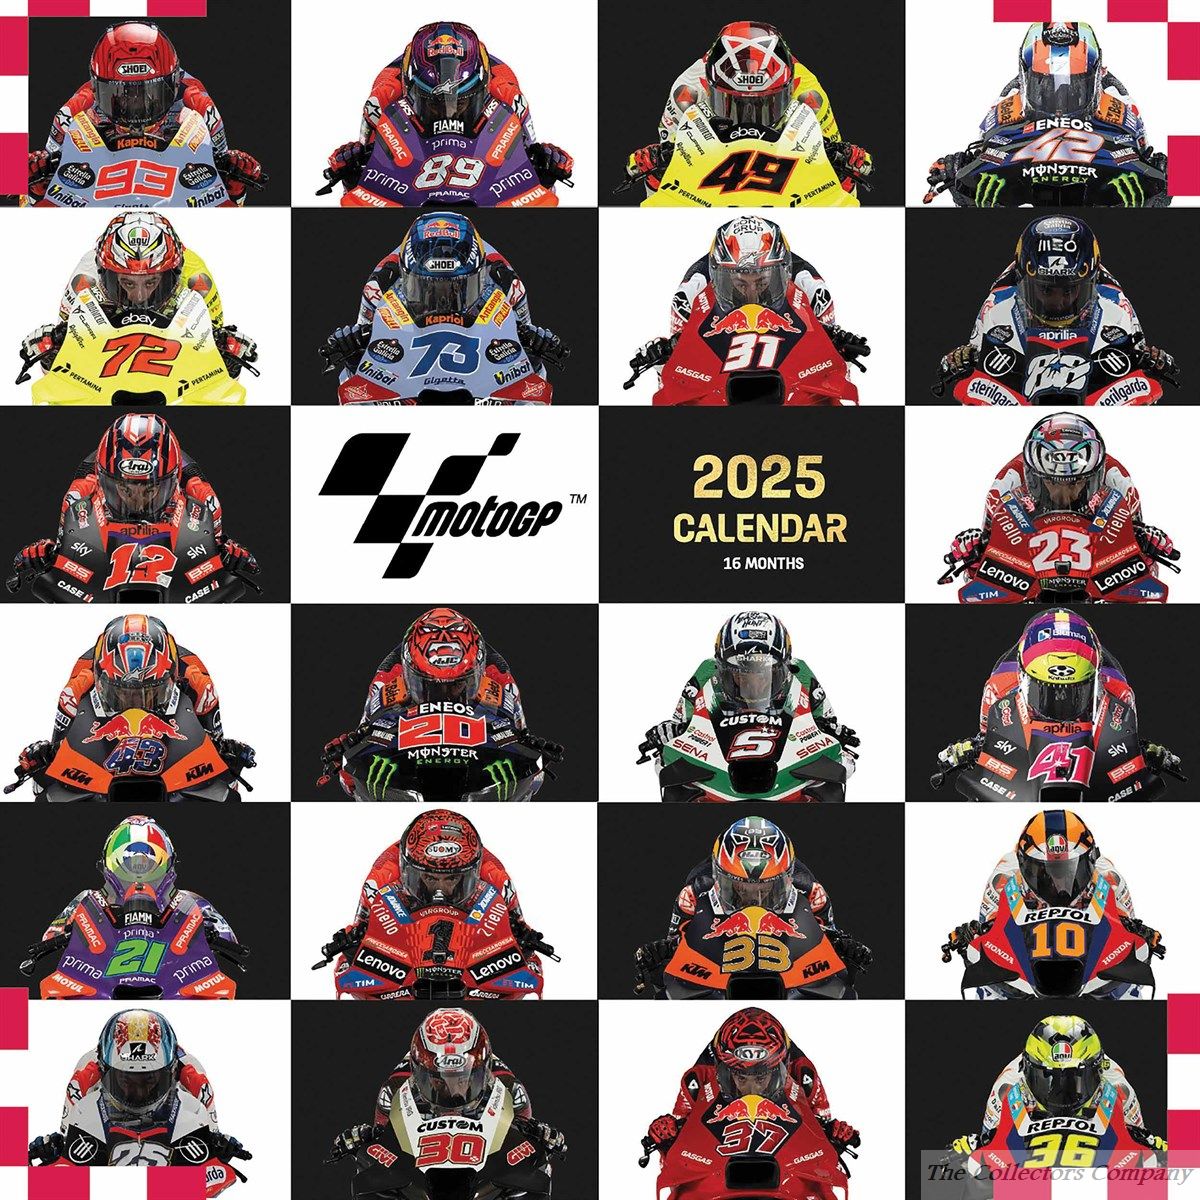 Moto GP Legends Calendar 2025